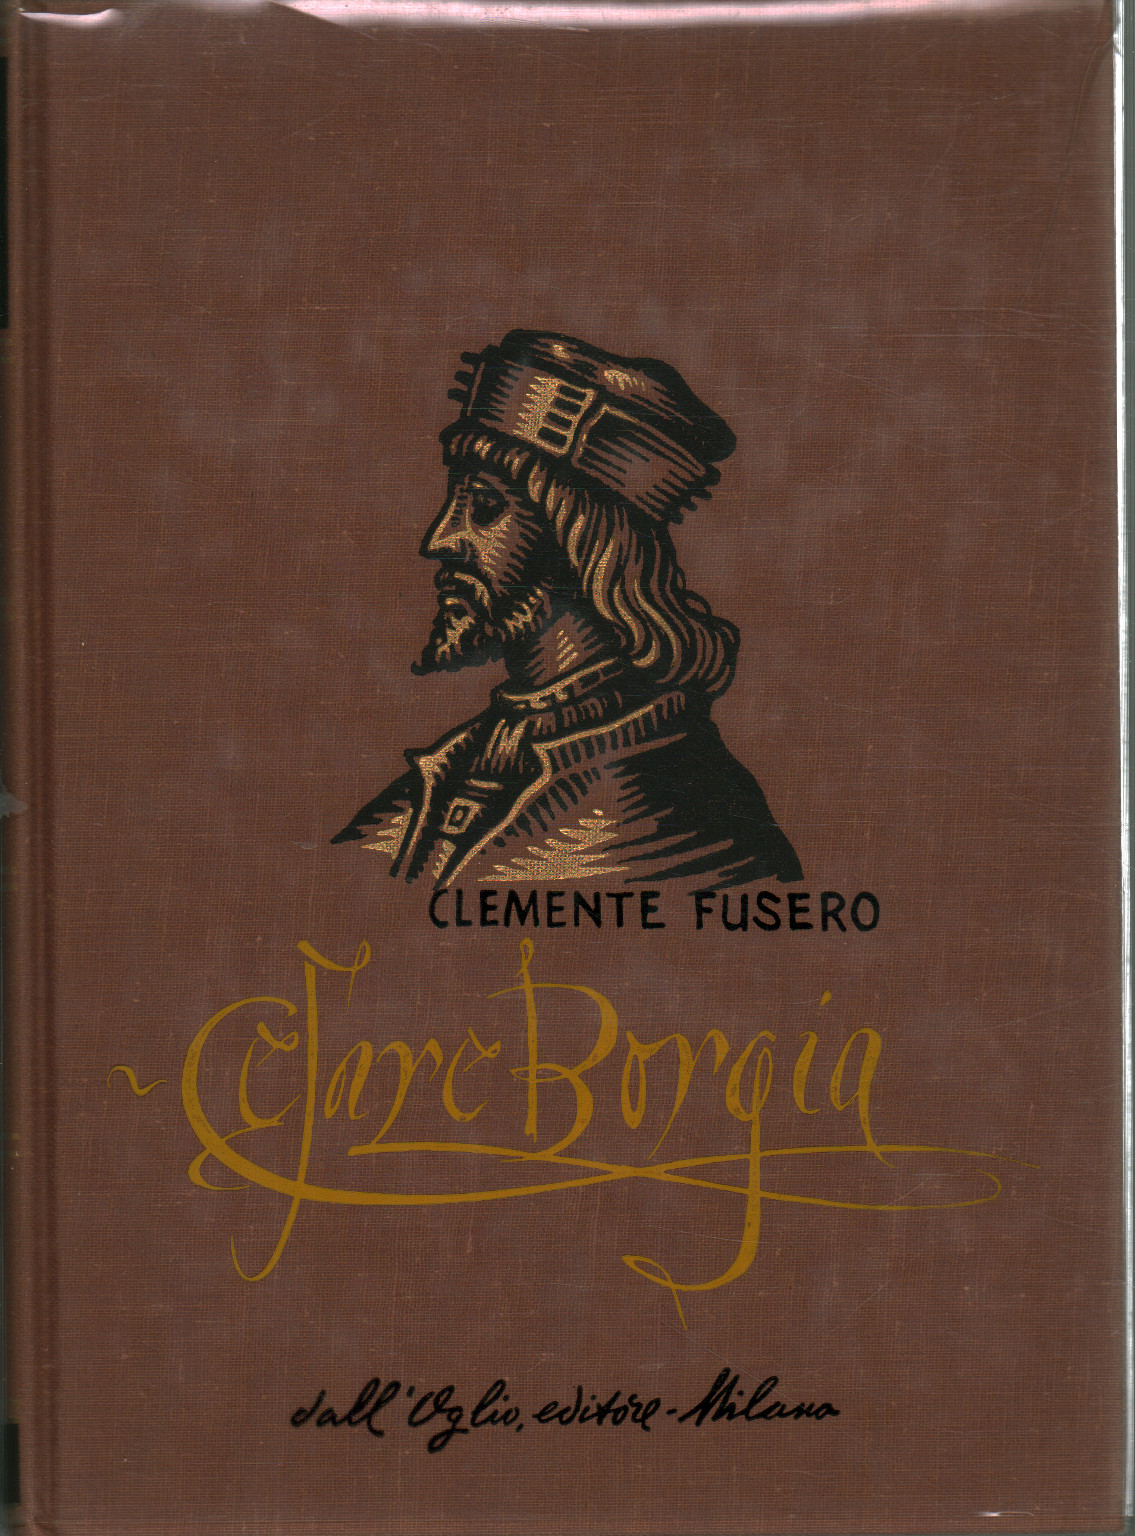 Cesare Borgia, Clemente Fusero